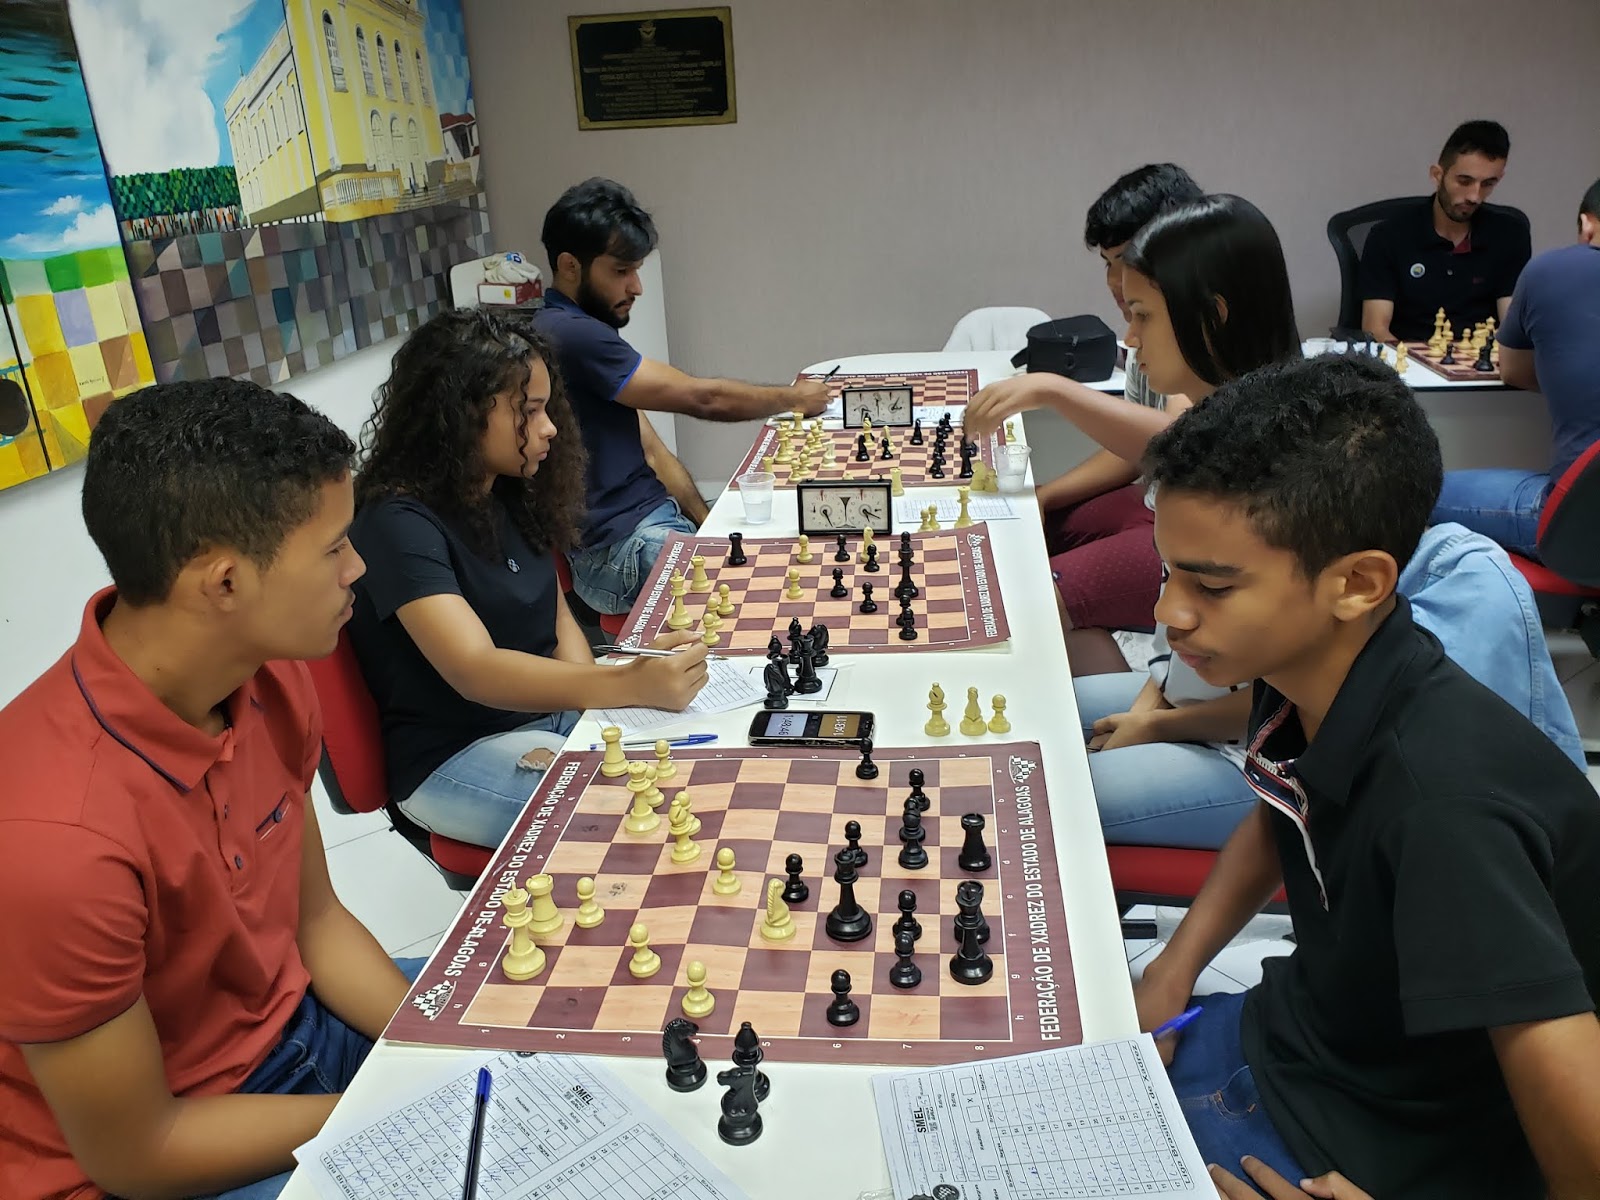 Fort Atacadista patrocina o 9º Floripa Chess Open